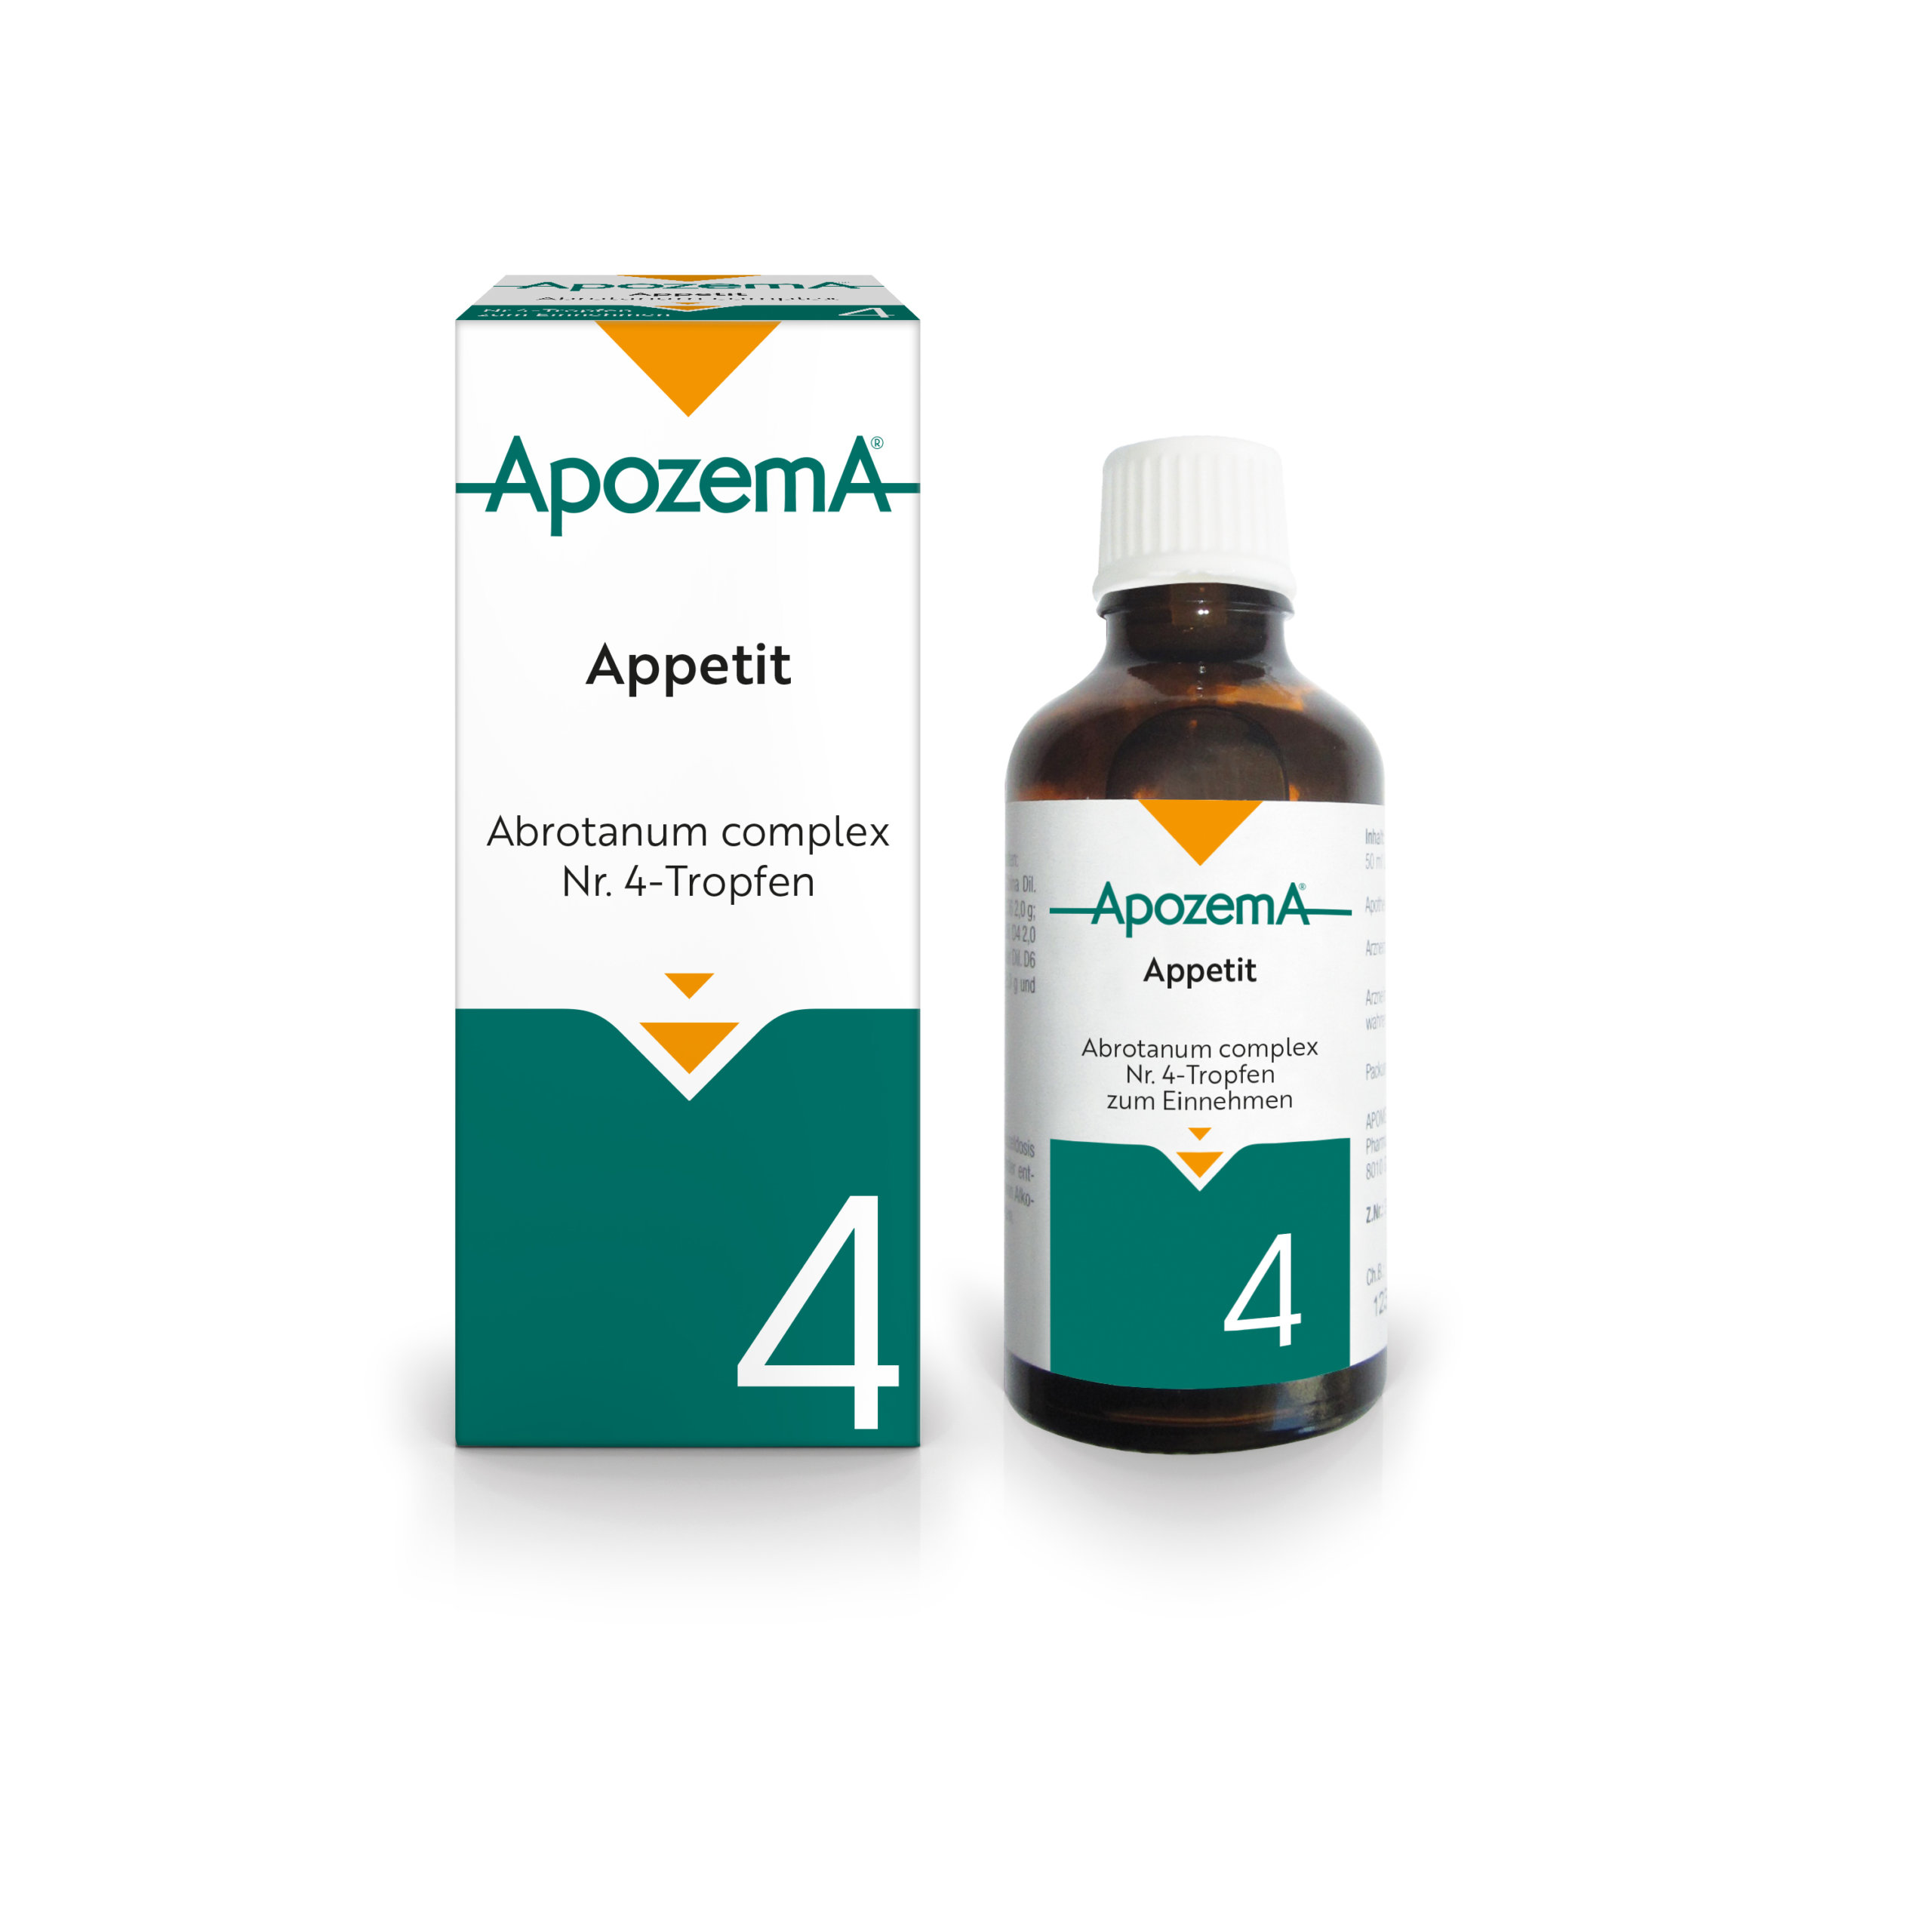 Apozema® Appetit; Abrotanum complex Nr. 4-Tropfen